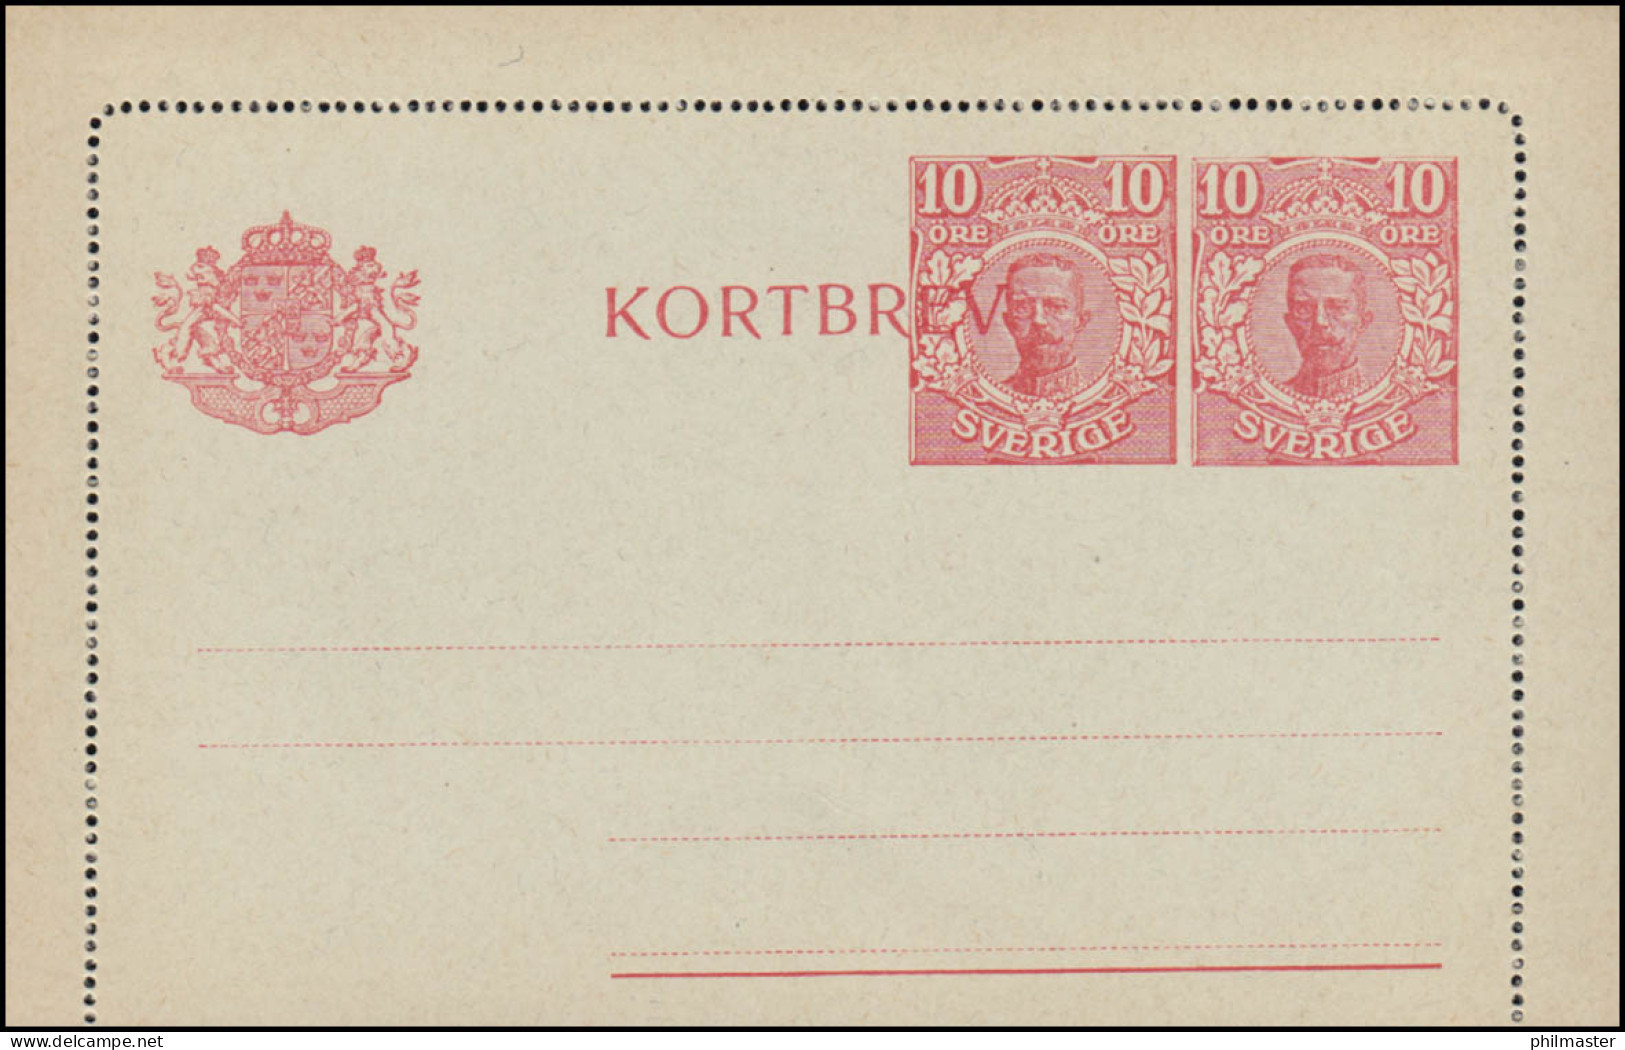 Schweden Kartenbrief K 21 KORTBREV König Gustav 10 Neben 10 Öre, ** Postfrisch - Ganzsachen